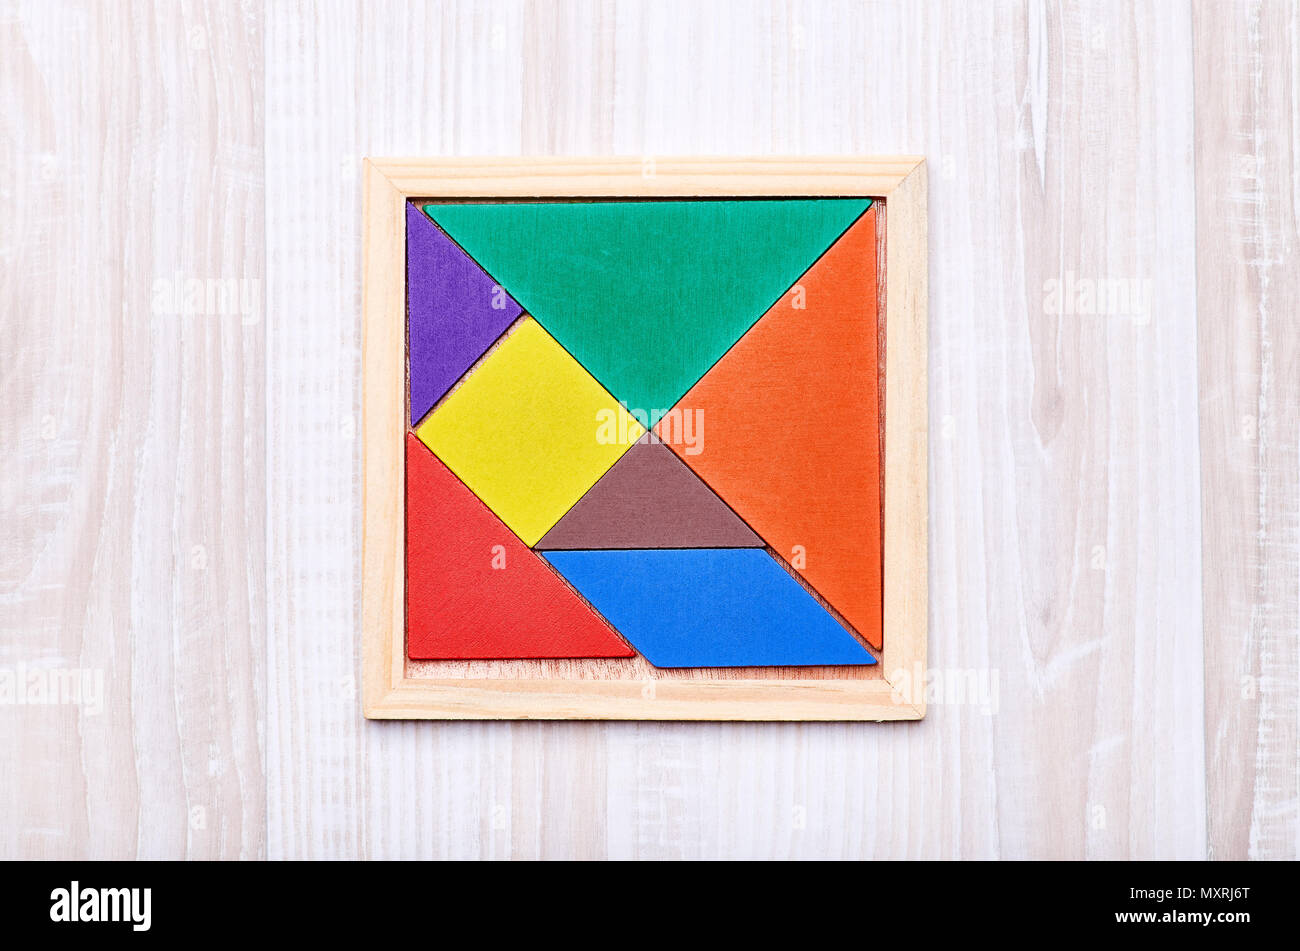 Formas geometricas con el tangram e imágenes de alta resolución - Alamy